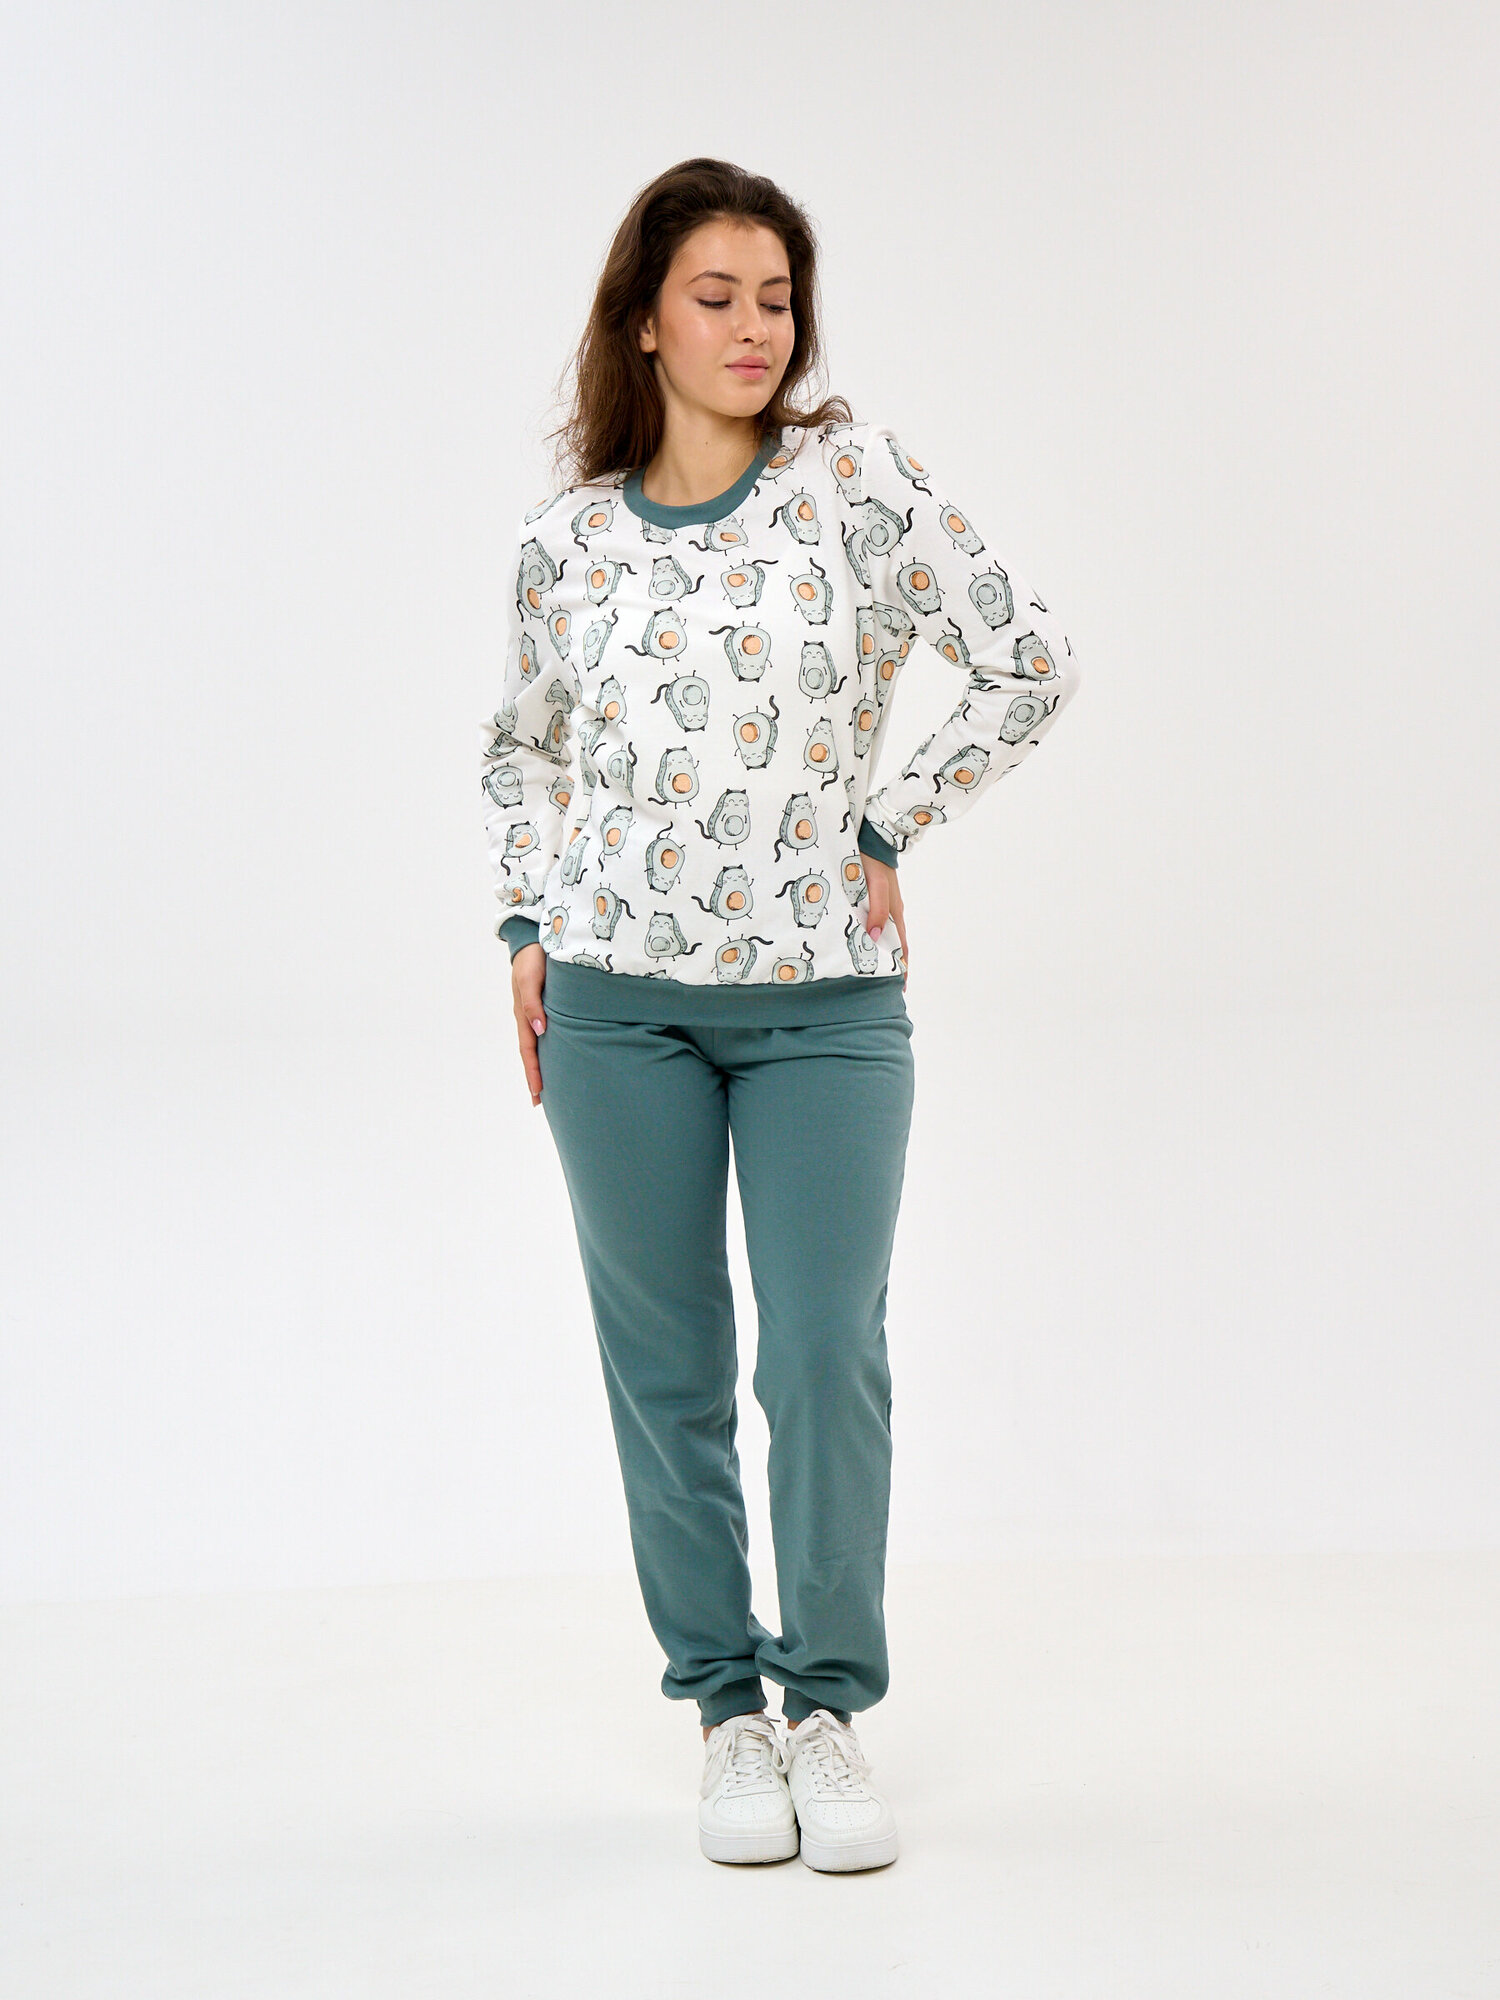 Пижама Монотекс, размер 52, белый, зеленый - фотография № 4